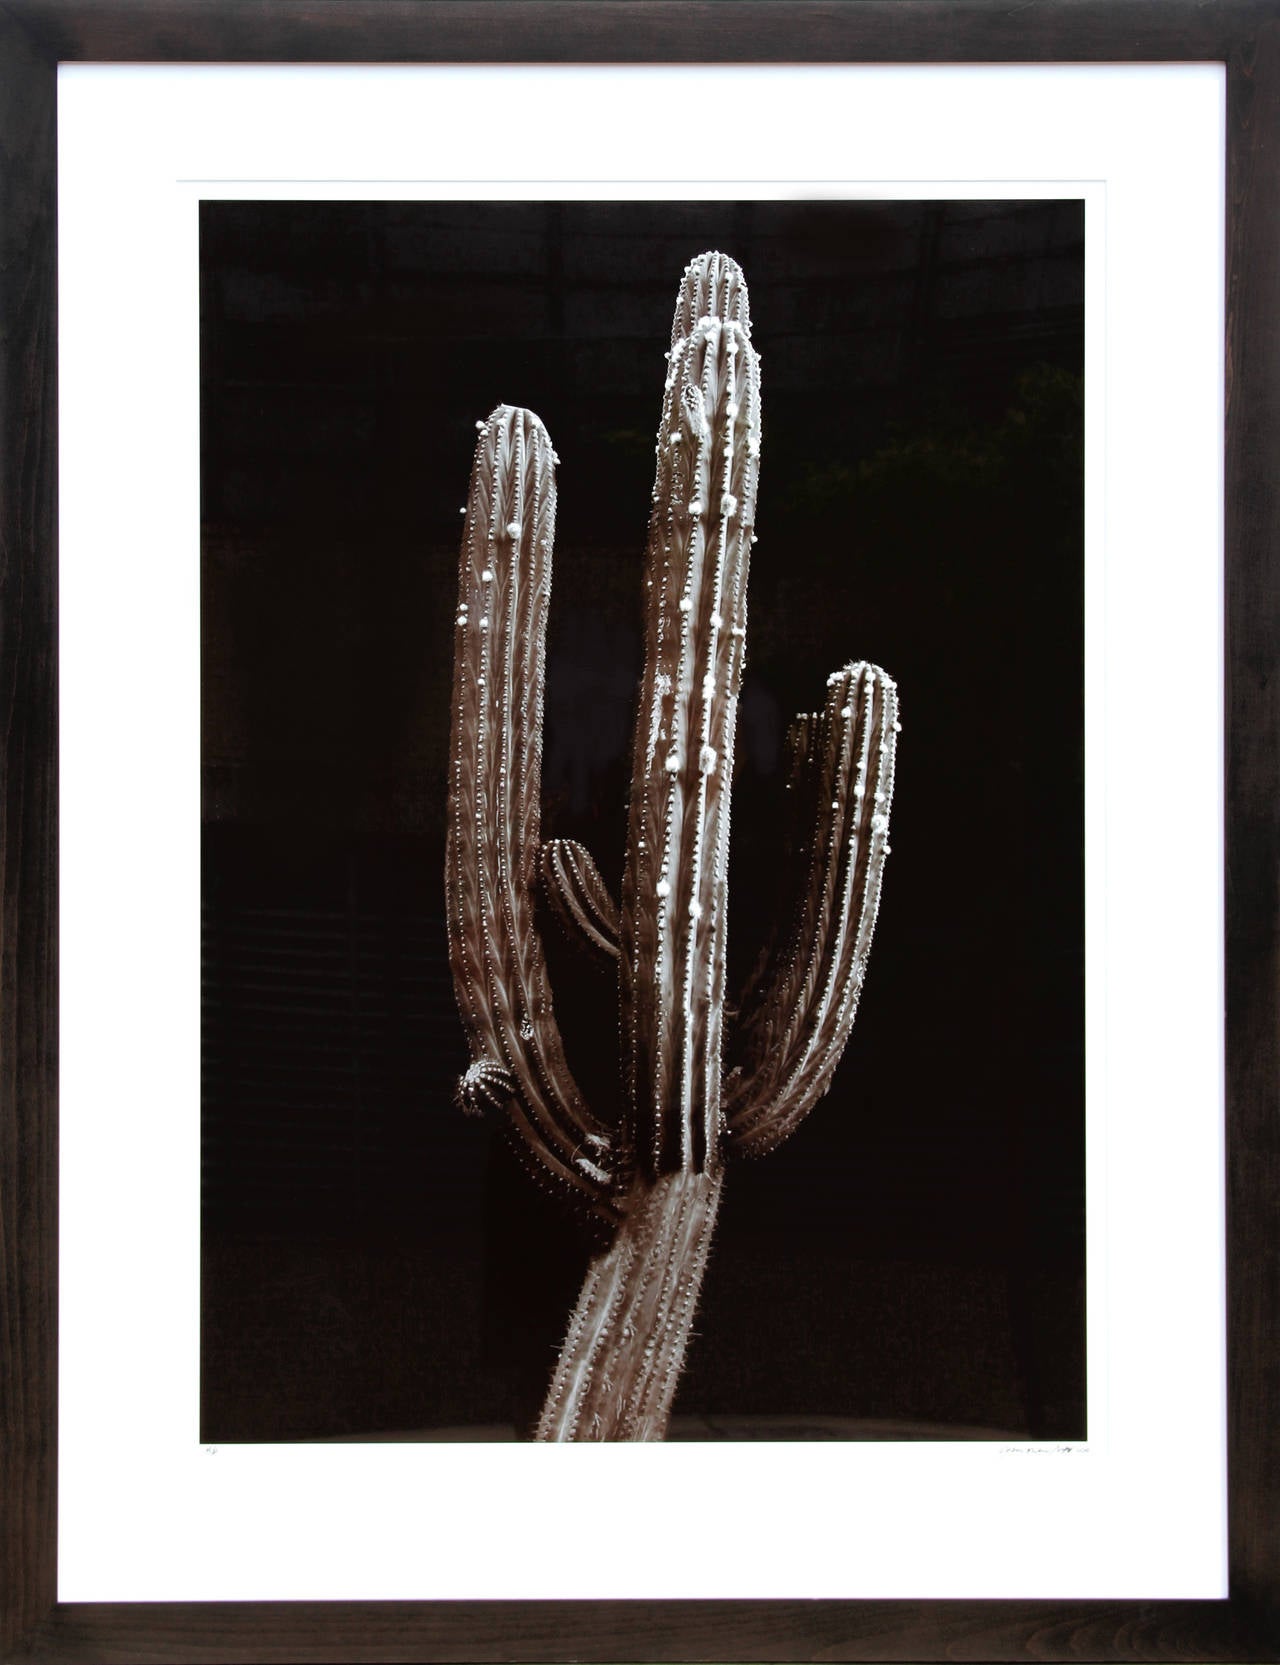 Un tirage photographique numérique de Jonathan Singer de 2010. Une étude de nature morte d'un cactus saguaro avec un contraste profond et une profondeur d'ombre. 

Artiste : Jonathan Singer, américain
Titre : Cactus Saguaro
Année : 2010
Médium :